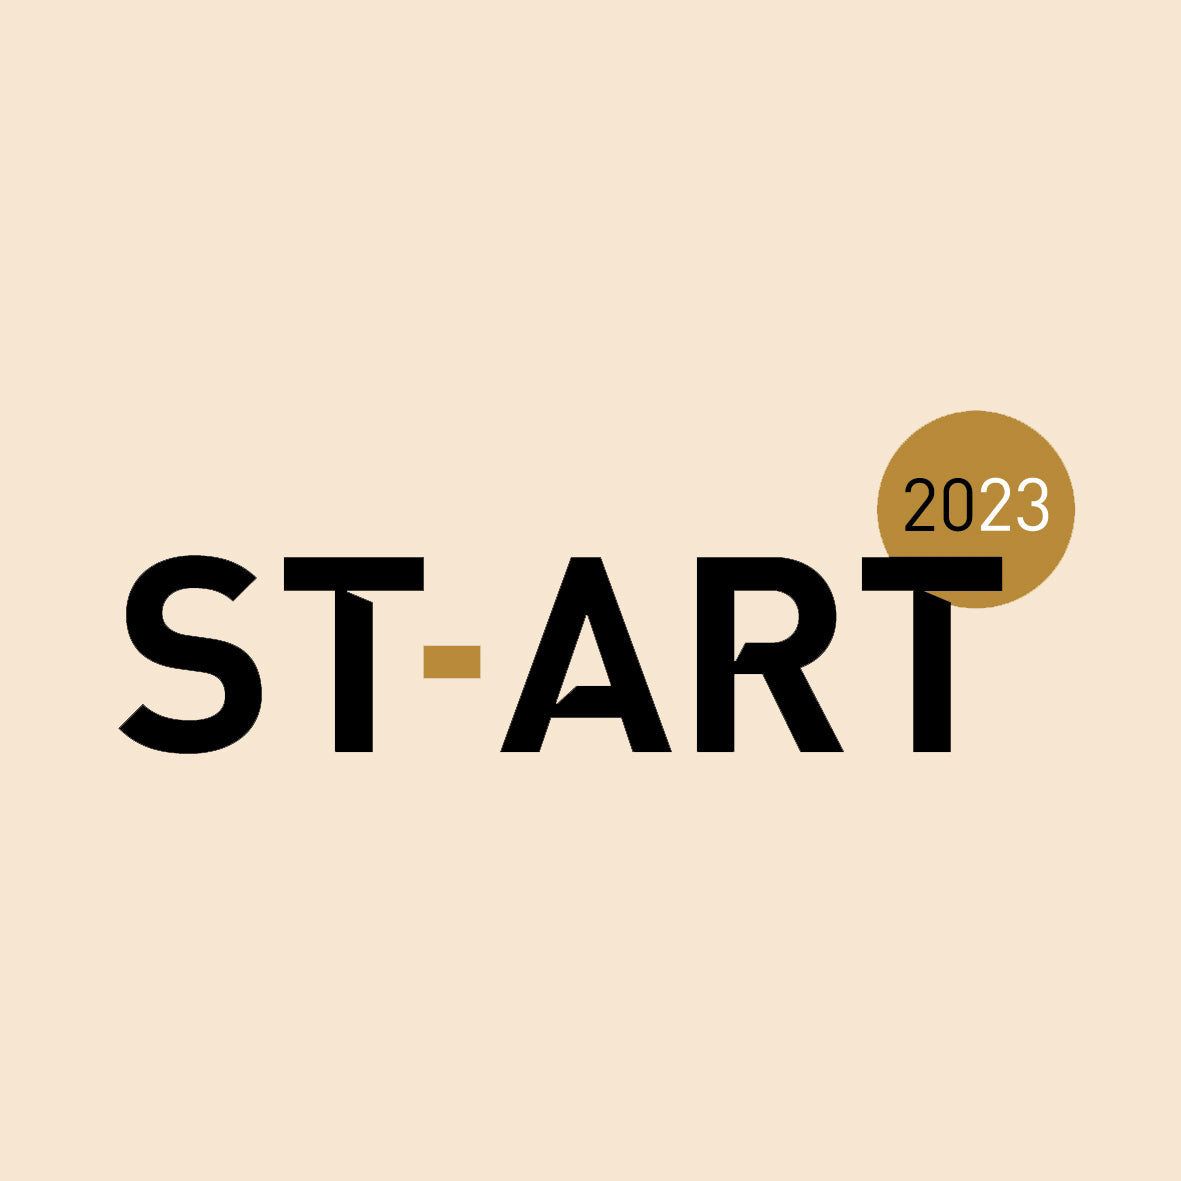 ST-ART STRASBOURG vom 24. - 26. November 2023